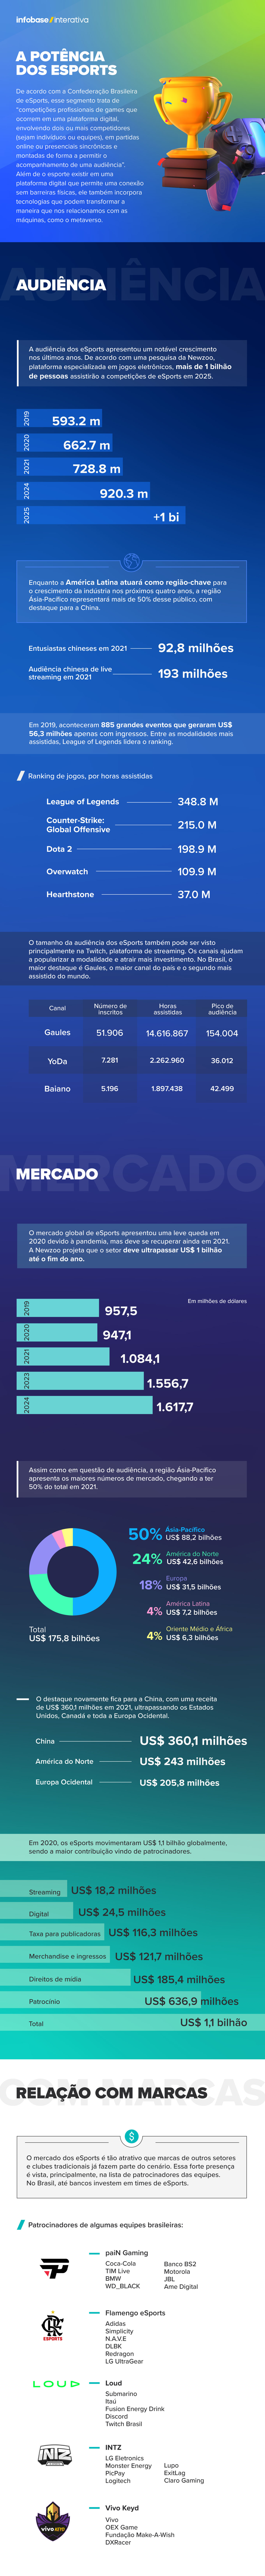 Brasil gera quase 15% do nosso faturamento global” - ﻿Games Magazine Brasil